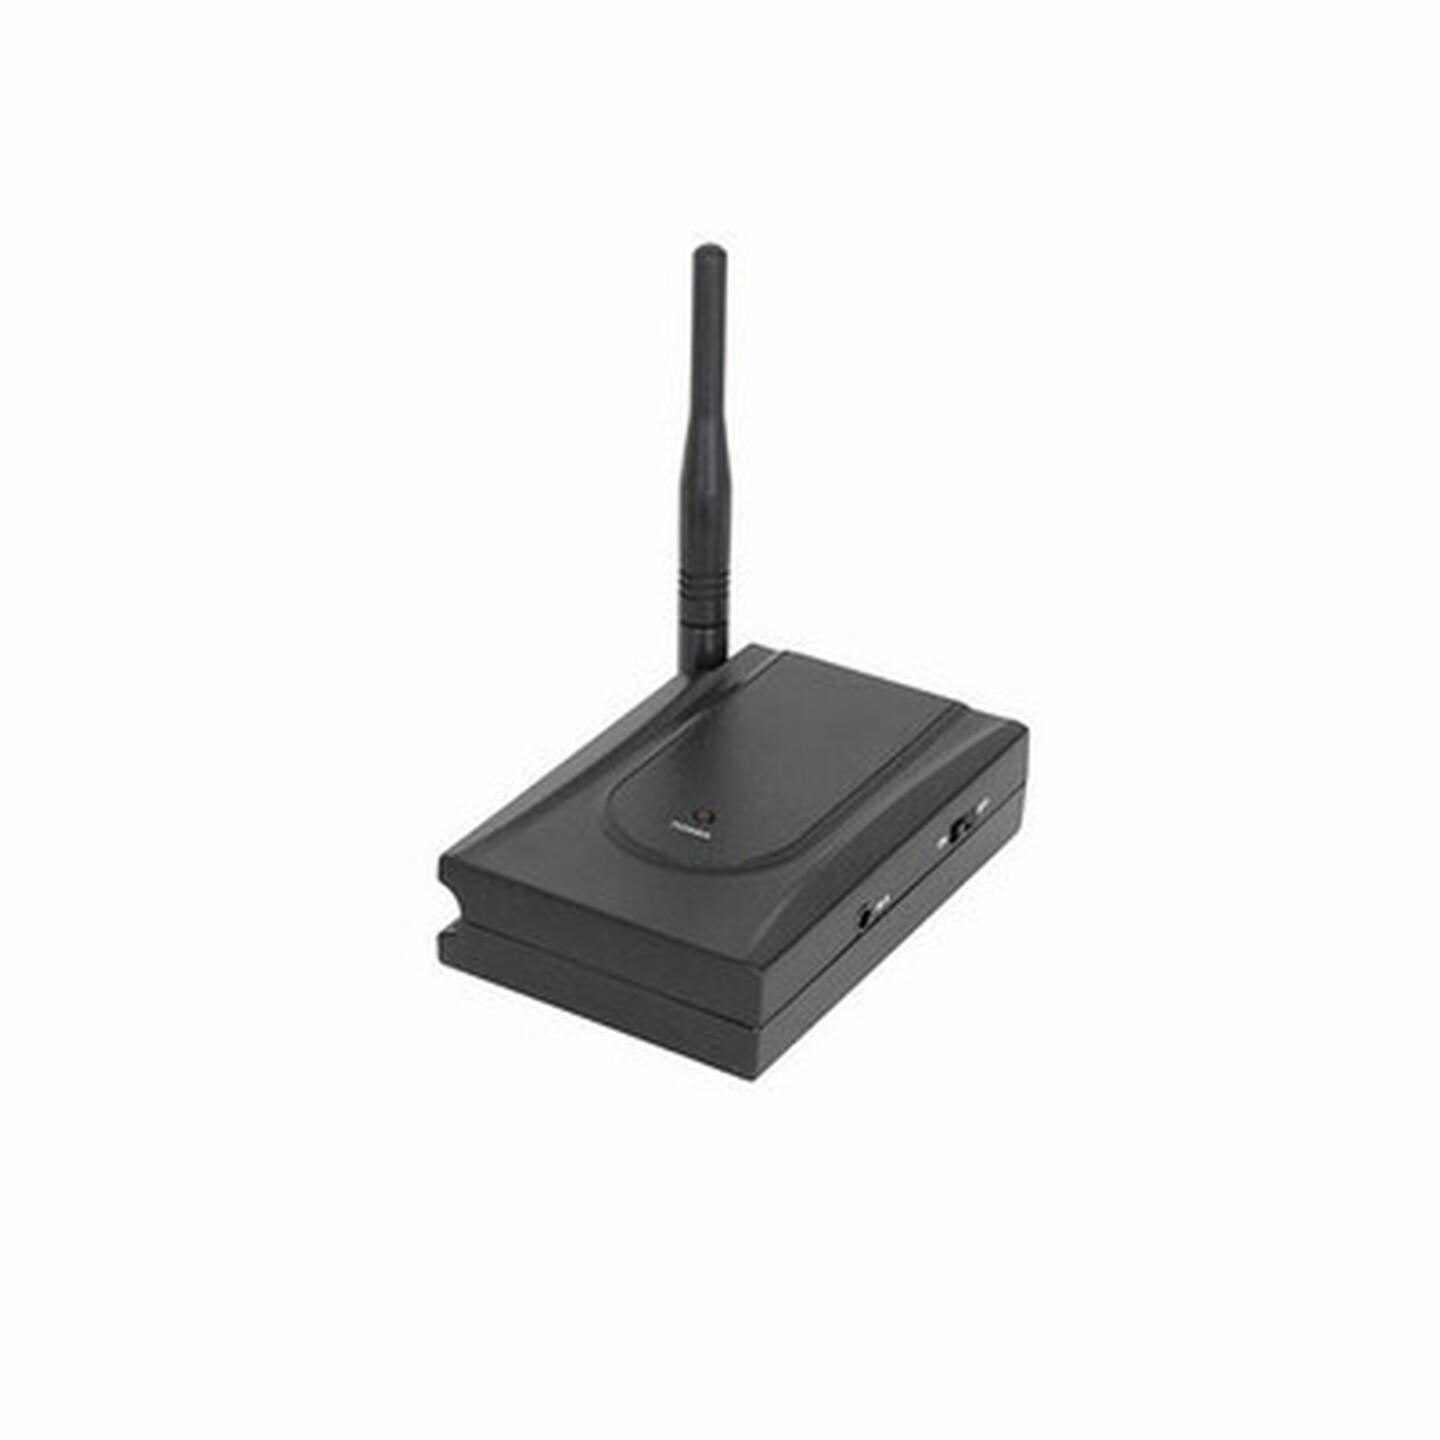 5.8GHz Wireless Receiver for AR-1880